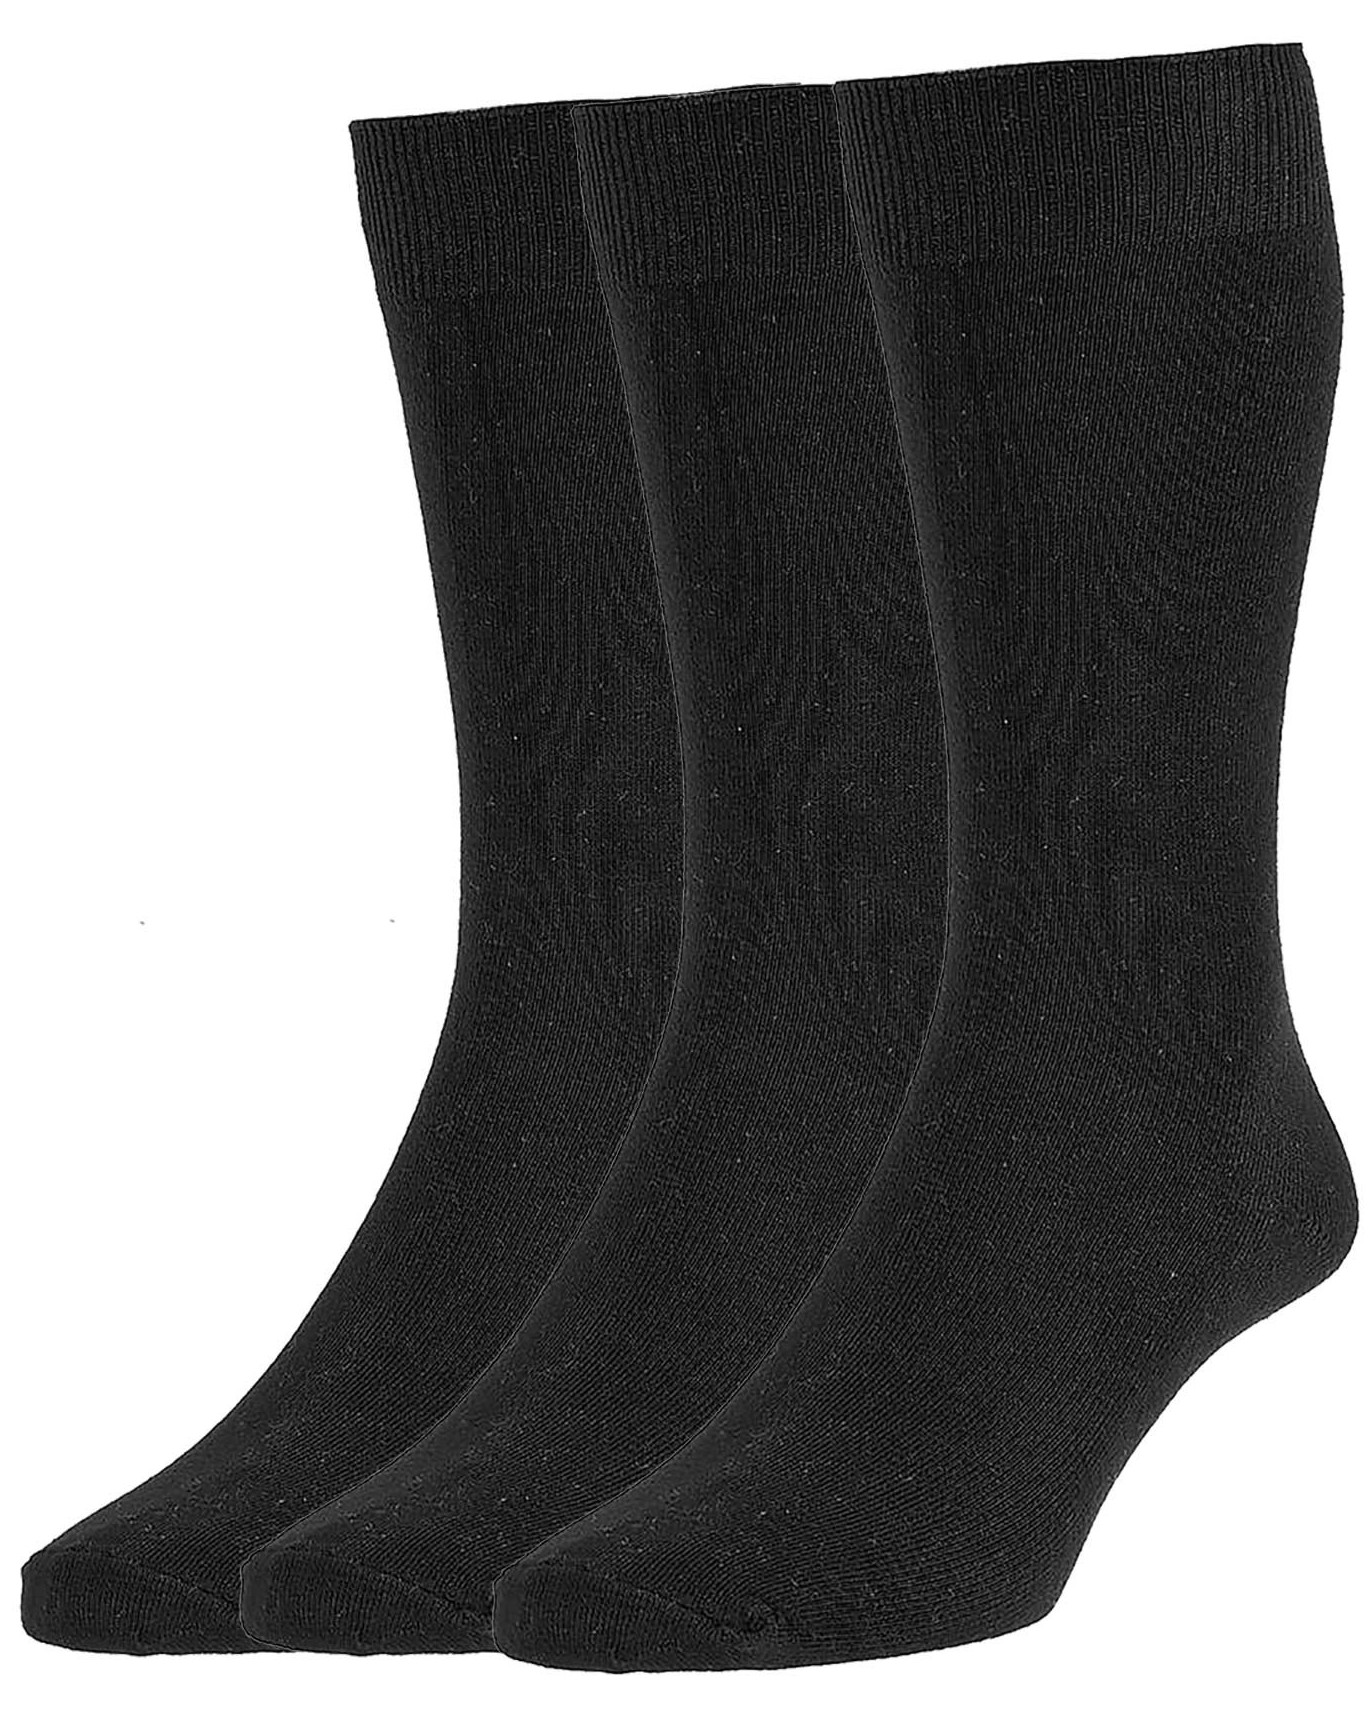 HJ Socks HJ7116/3 CCC Size 6-11